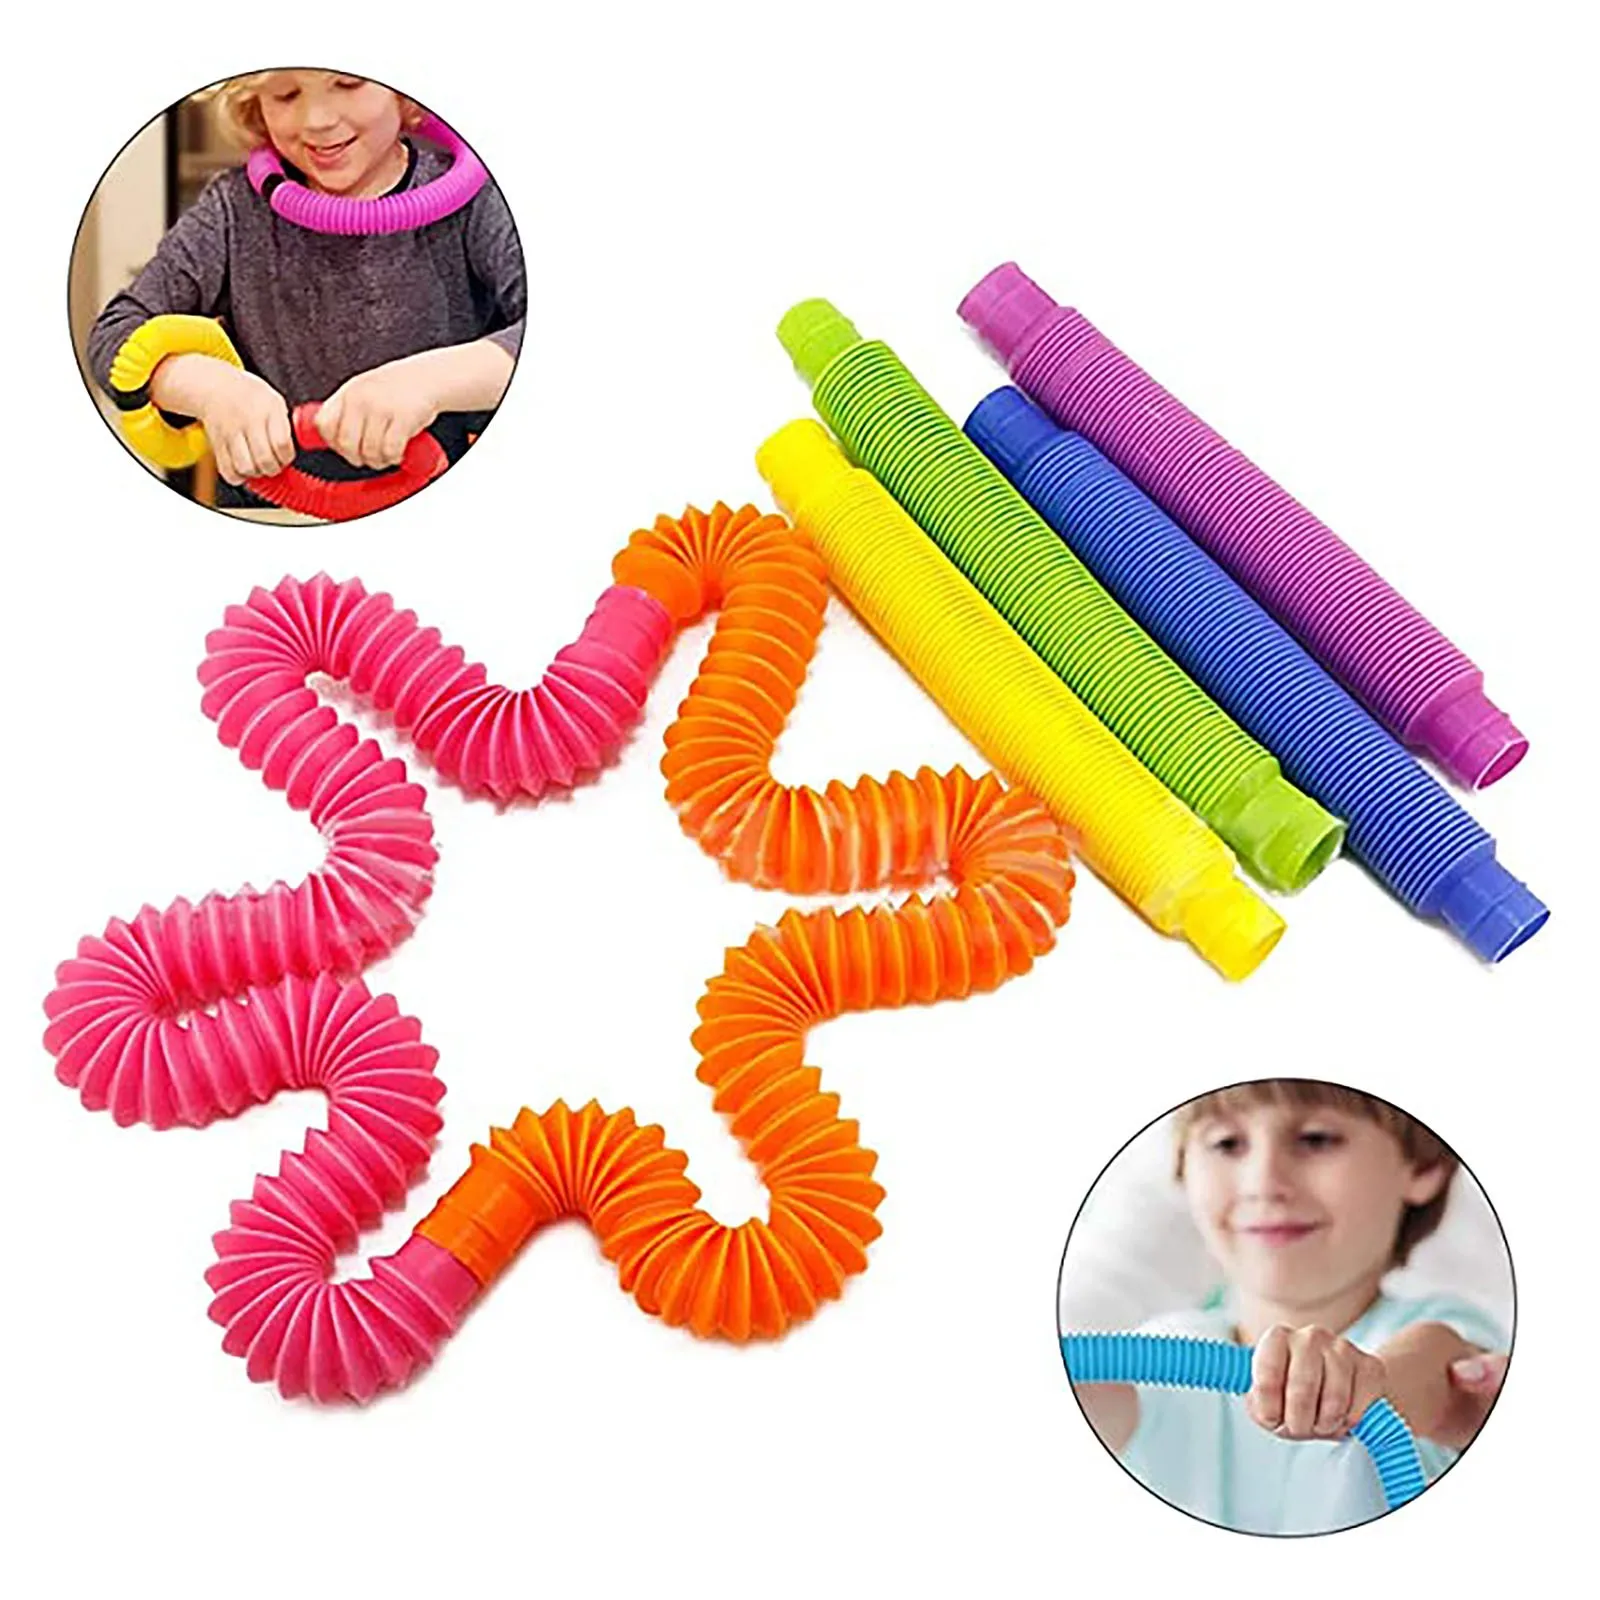 

Игрушки-антистресс, набор эластичных струн, подарочный набор из 30 штук, игрушка для активного отдыха для детей и взрослых